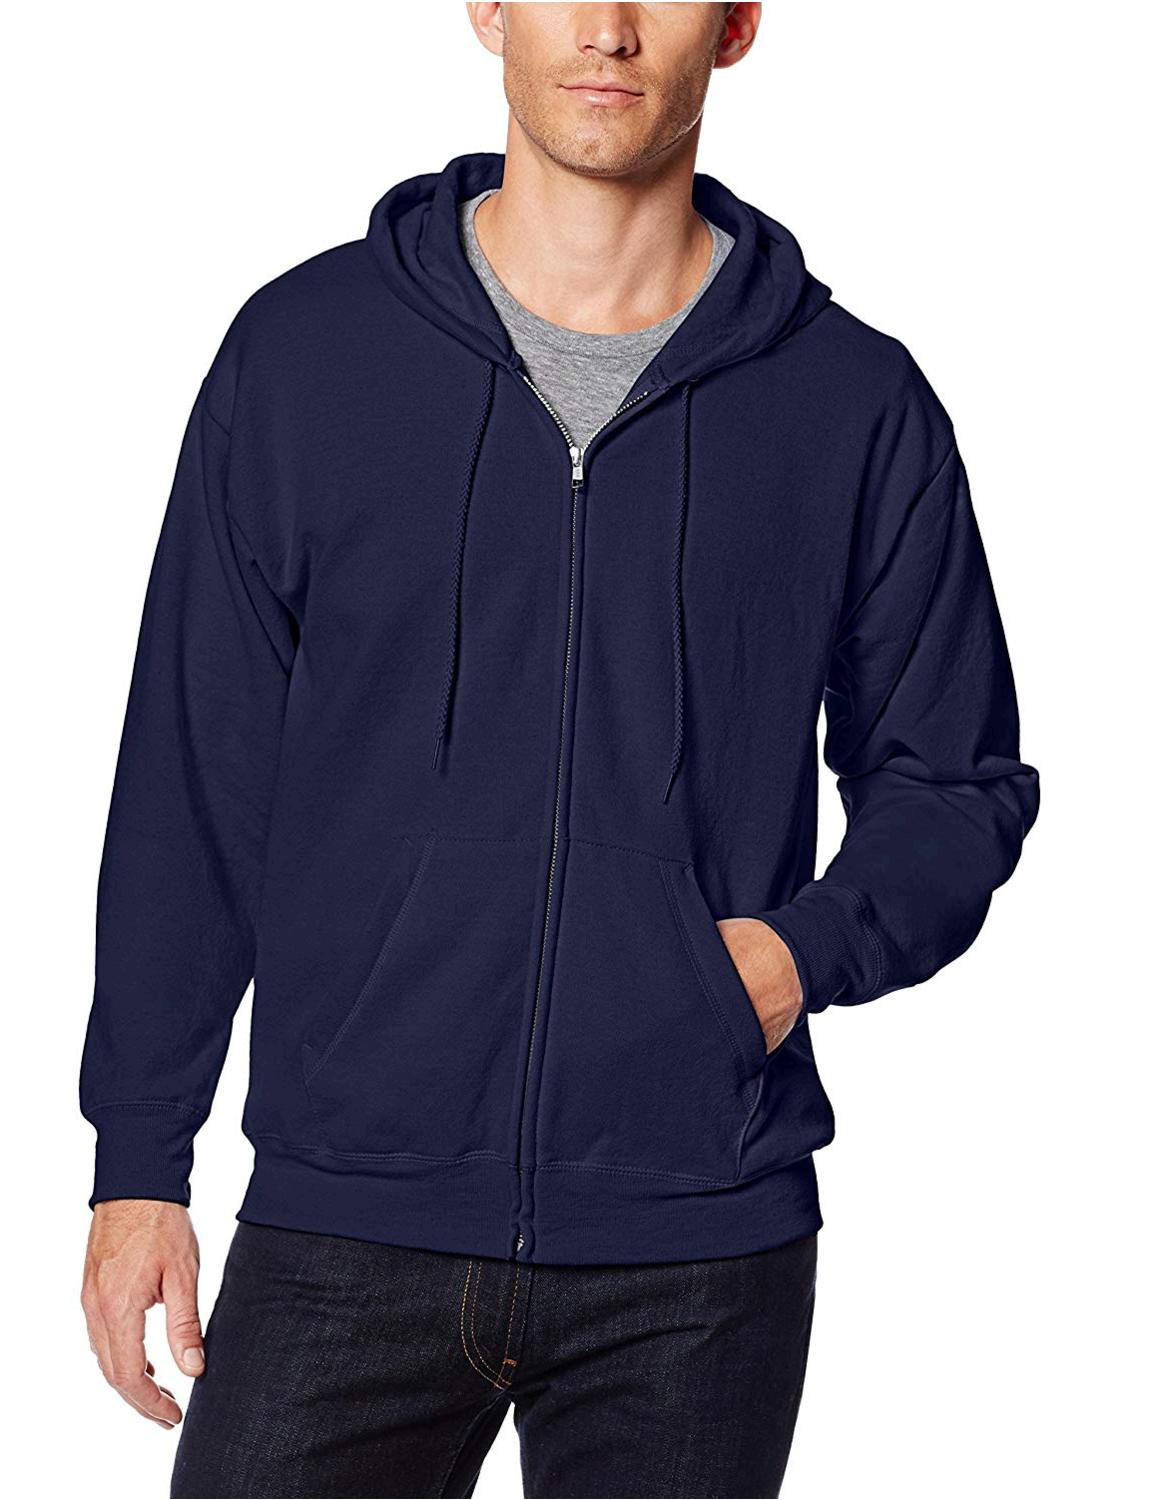 Hanes Men's Full Zip EcoSmart Fleece Hoodie, Navy, Medium, Navy, Size ...